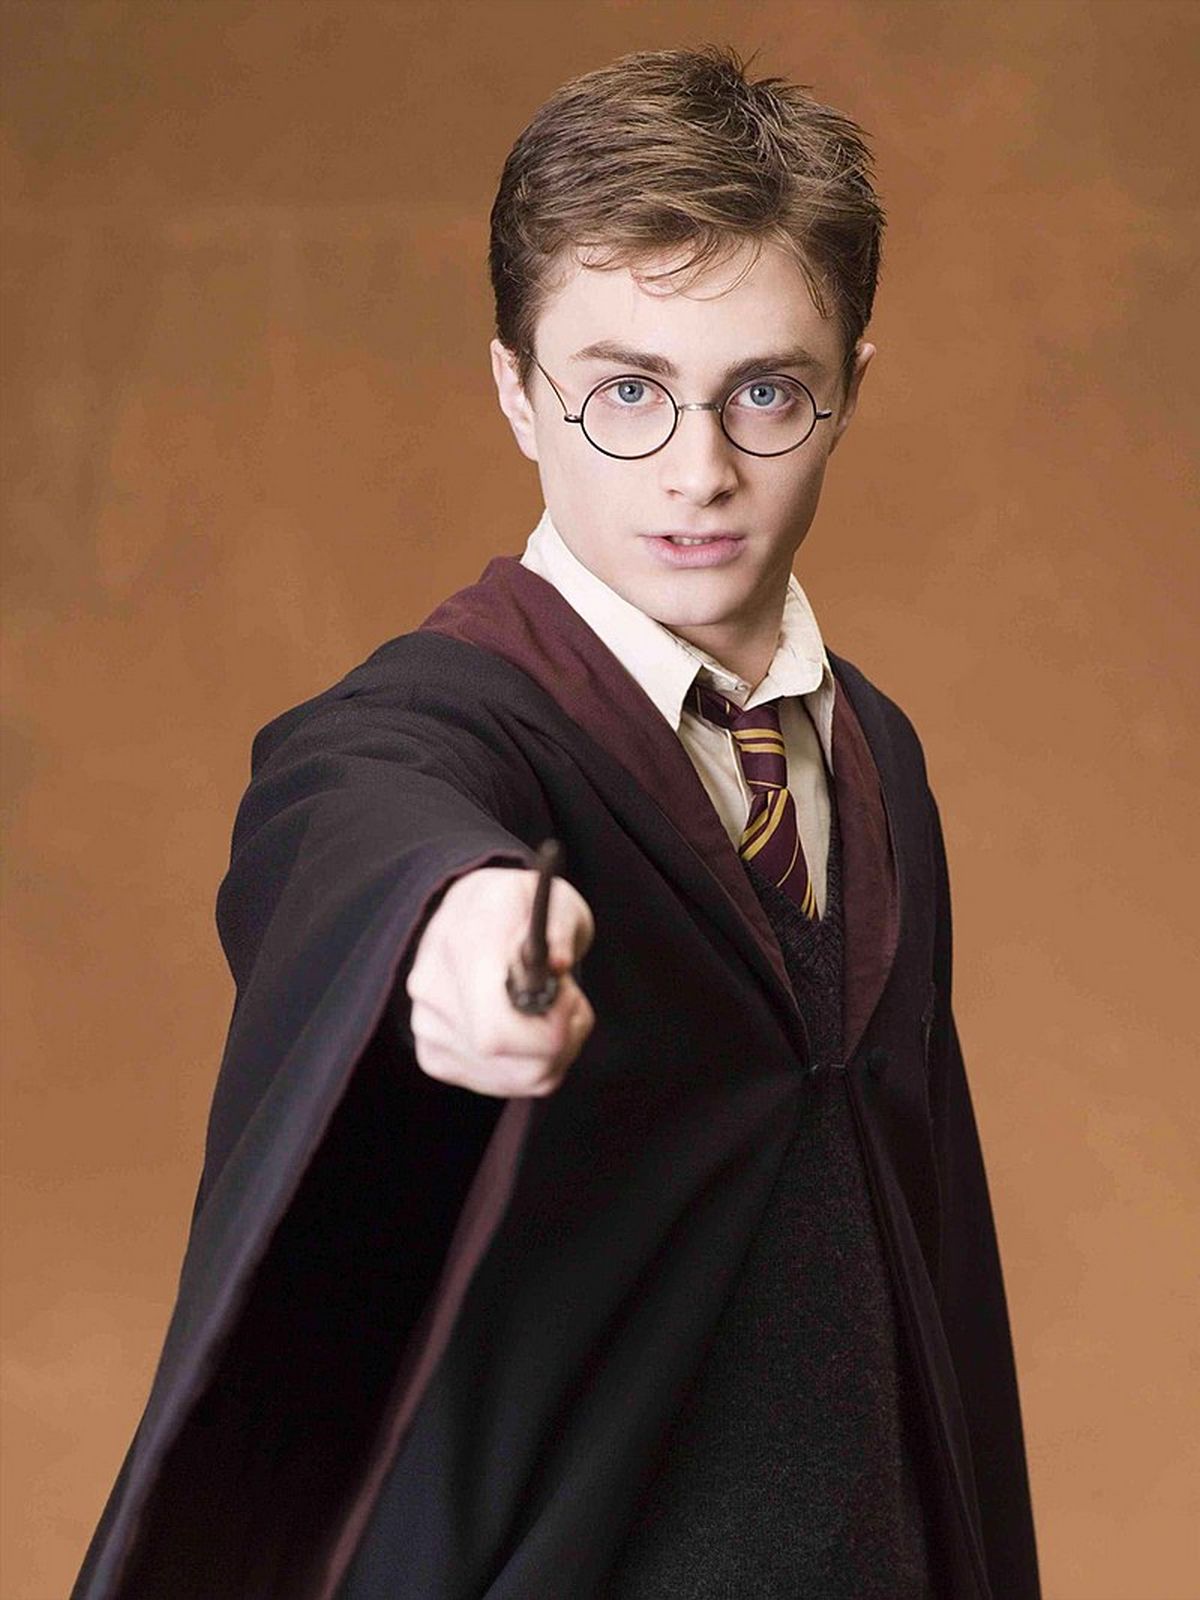 Daniel Radcliffe est devenu célèbre à l'âge de 12 ans, lorsqu'il a commencé à incarner Harry Potter dans la série de films du même nom.